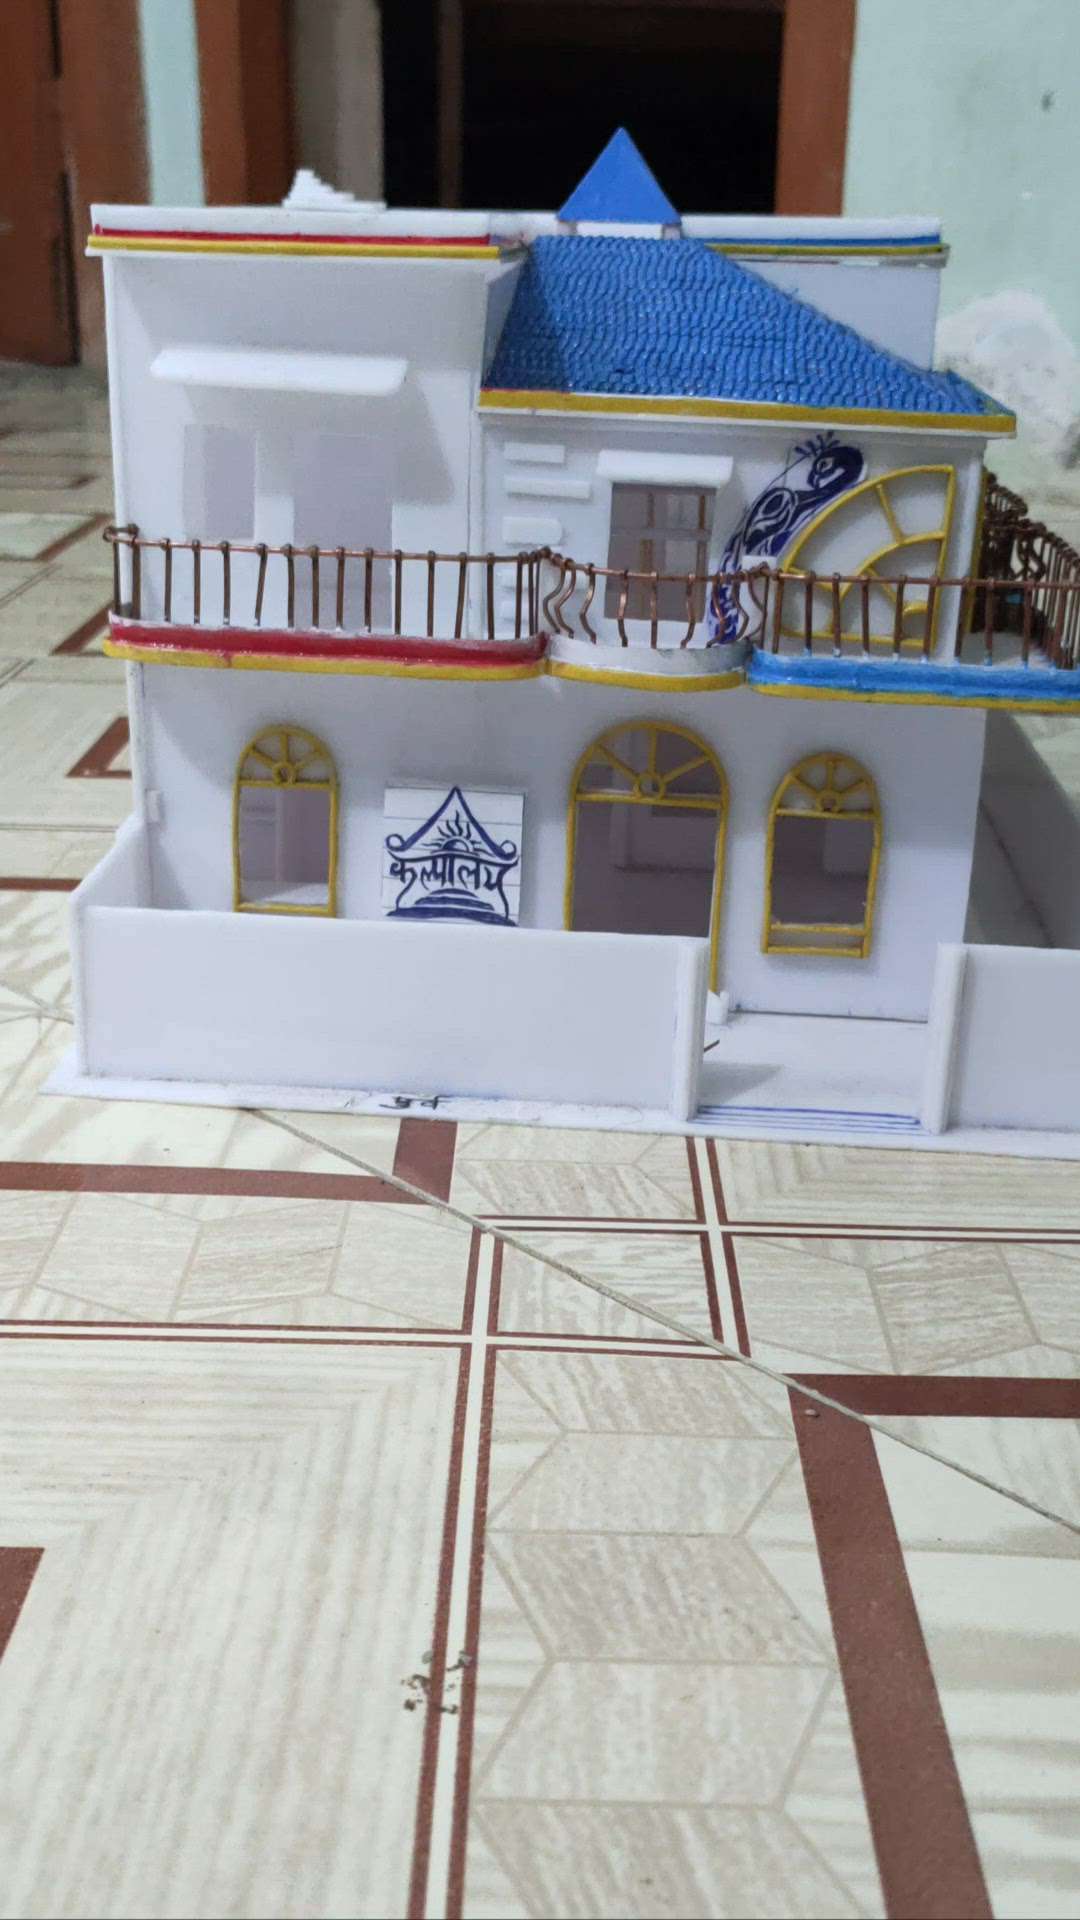 3D home model bnvane kliyehamsesamprkkare#3dmodel #HomeAutomation #Vastushastra #AltarDesign  #HouseDesigns